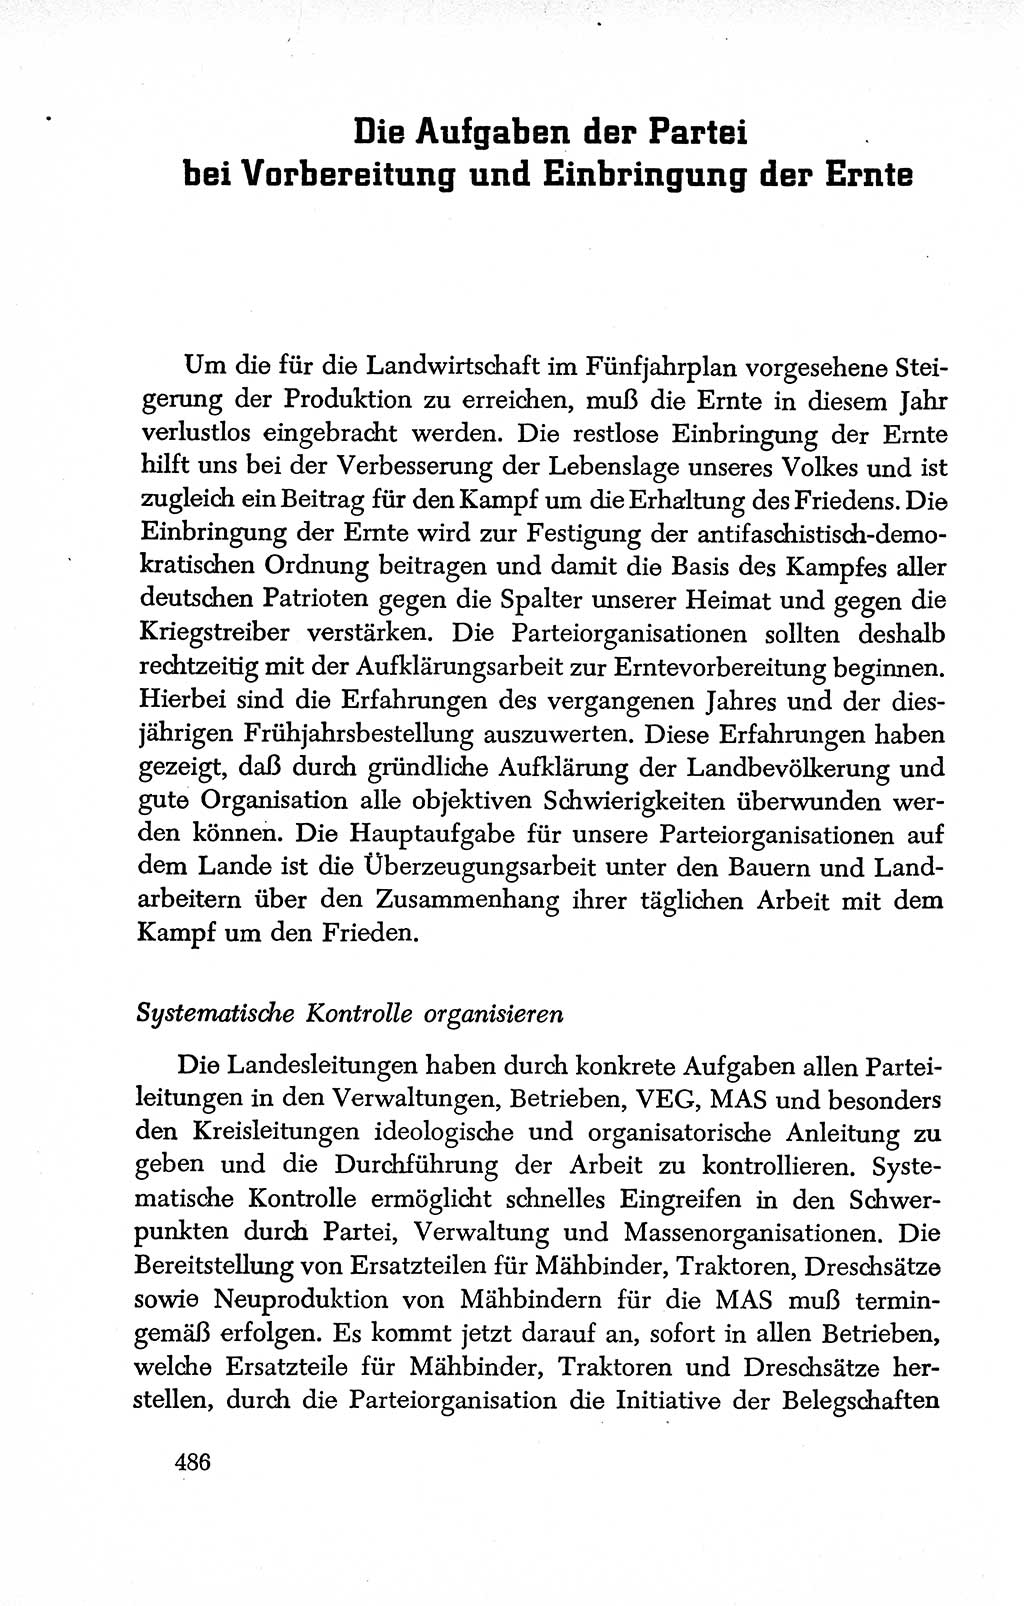 Dokumente der Sozialistischen Einheitspartei Deutschlands (SED) [Deutsche Demokratische Republik (DDR)] 1950-1952, Seite 486 (Dok. SED DDR 1950-1952, S. 486)